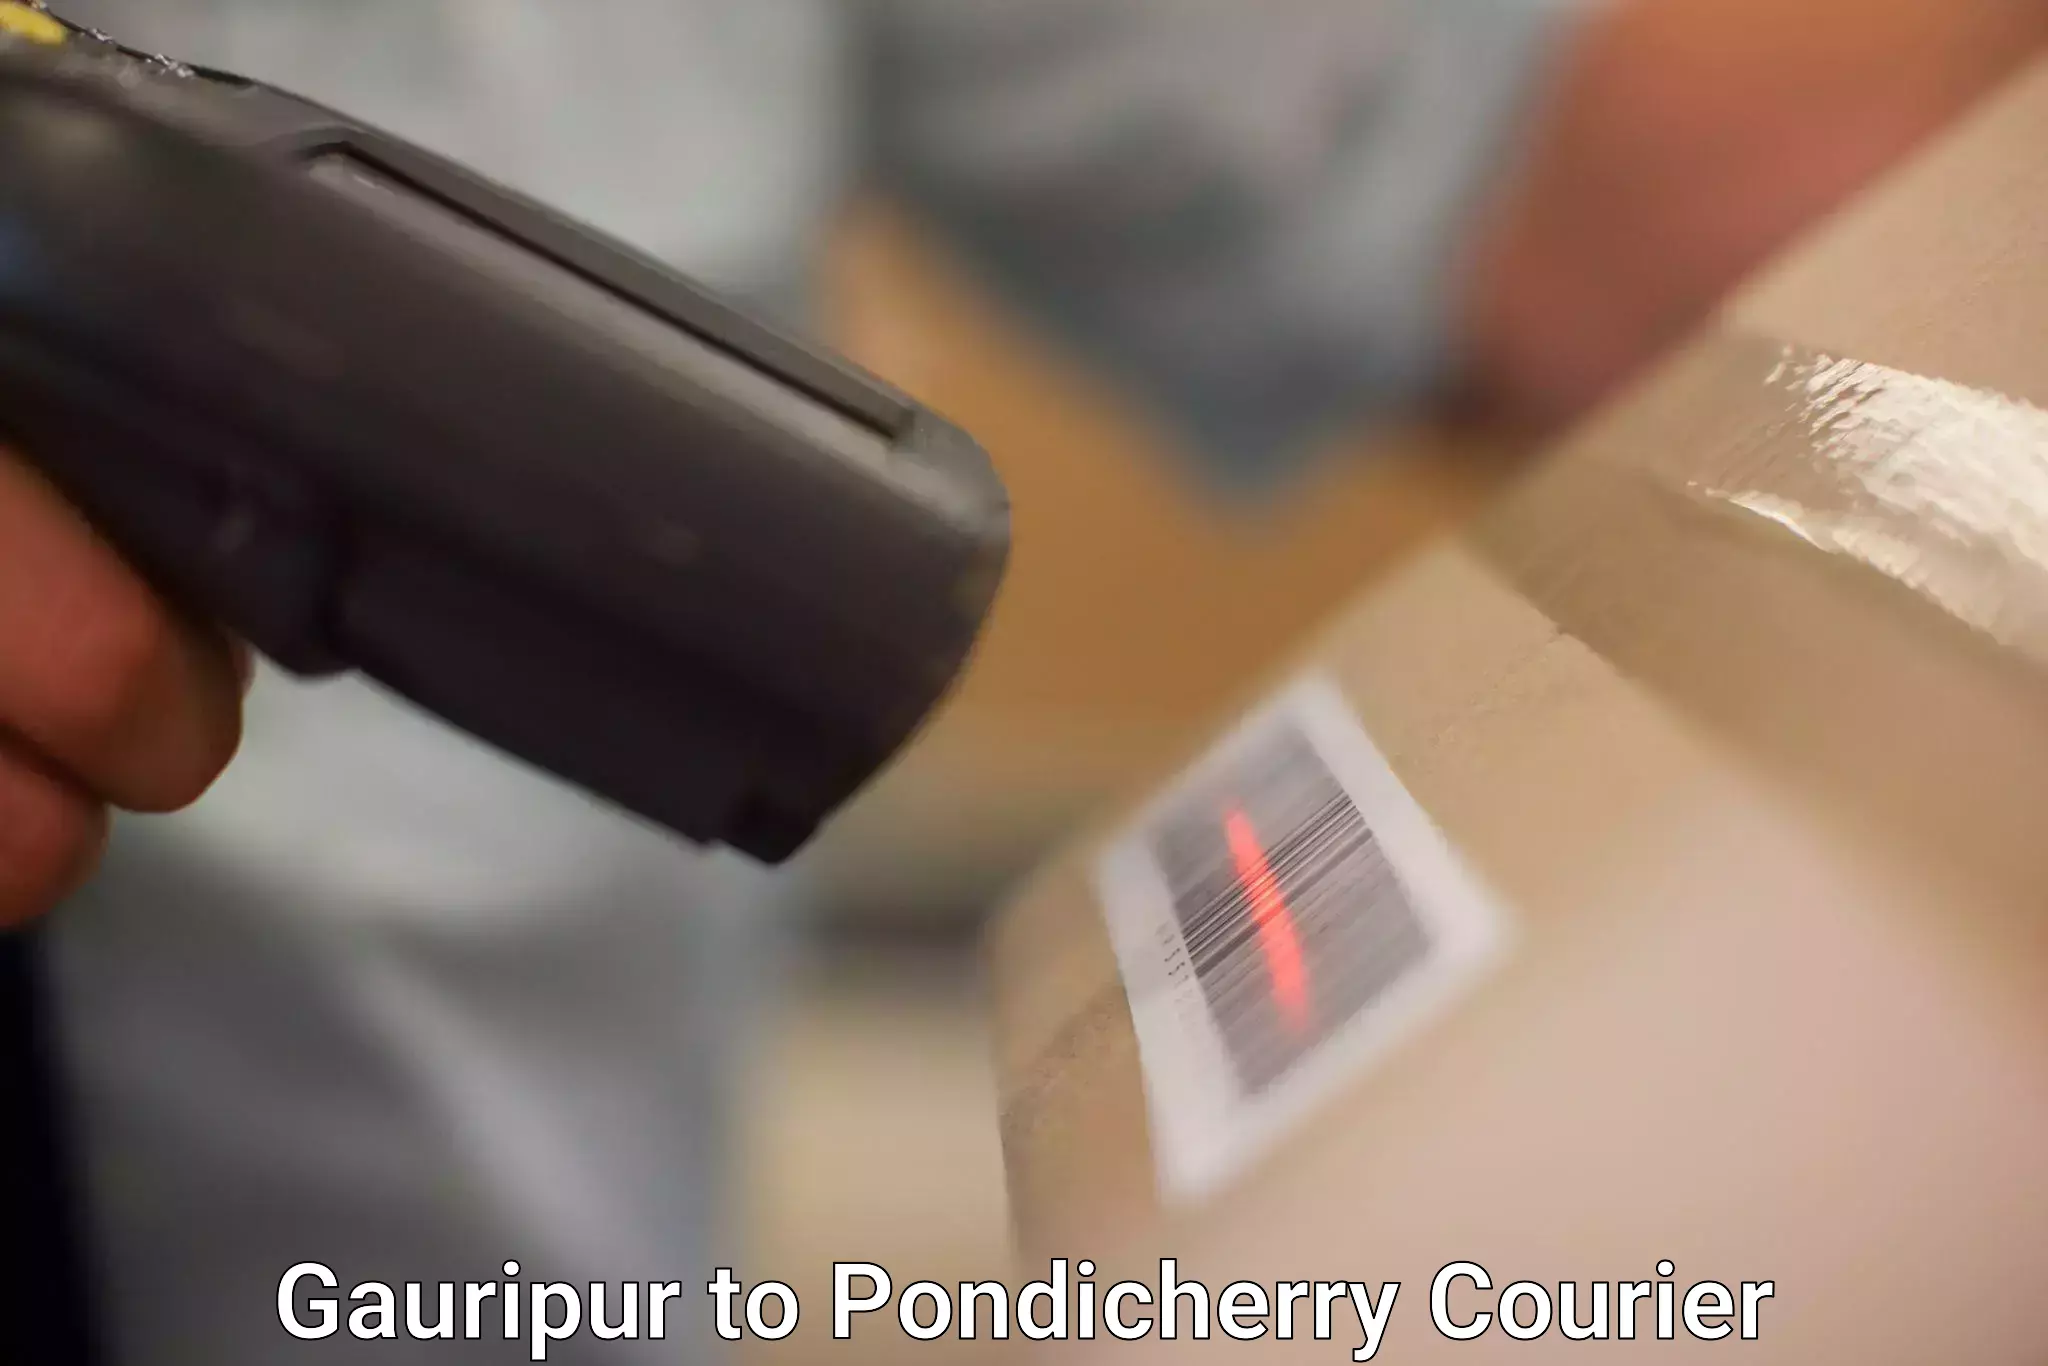 Next-generation courier services Gauripur to Pondicherry